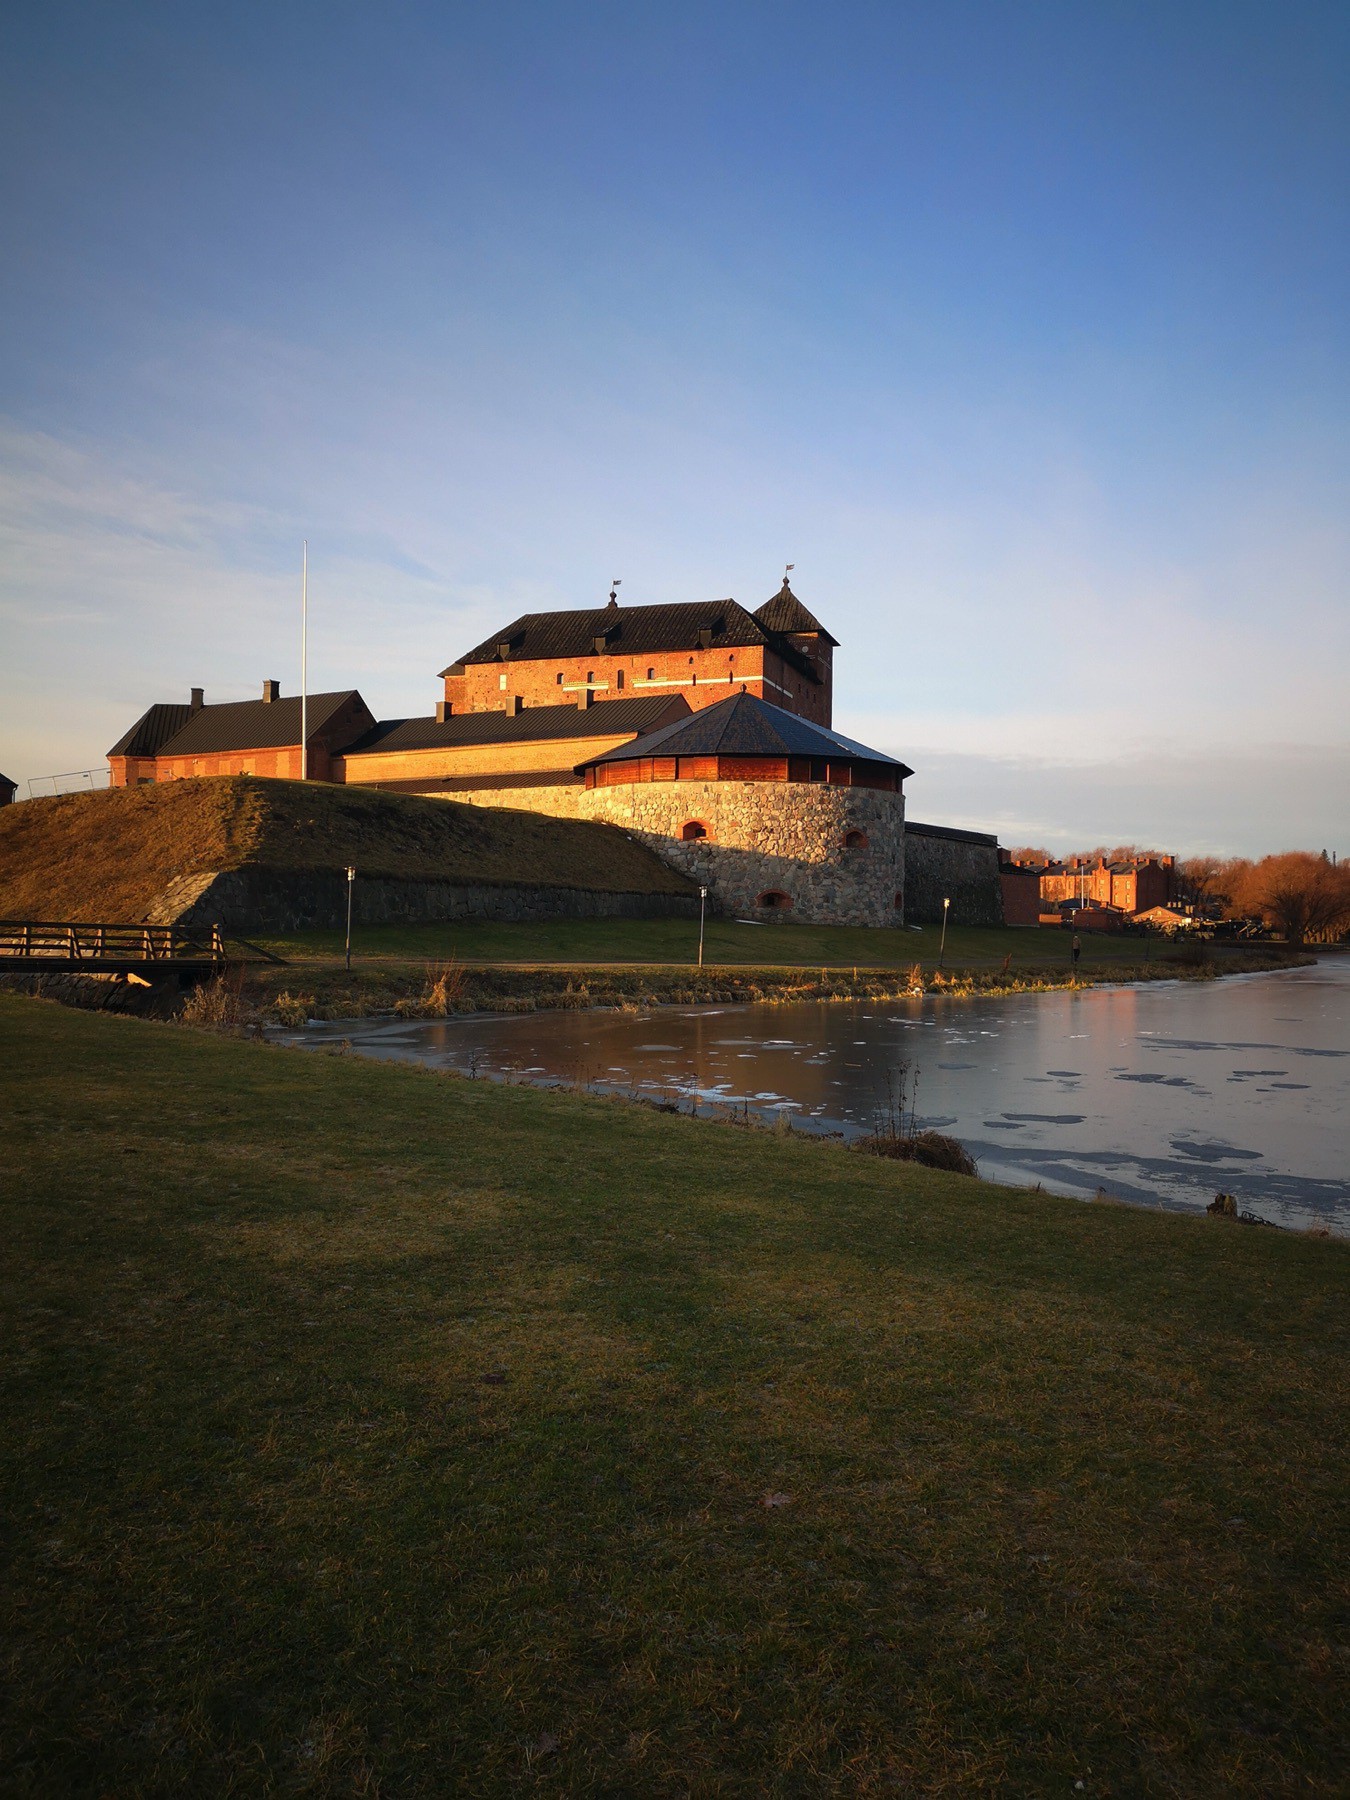 Häme castle lighted with rays of January sun